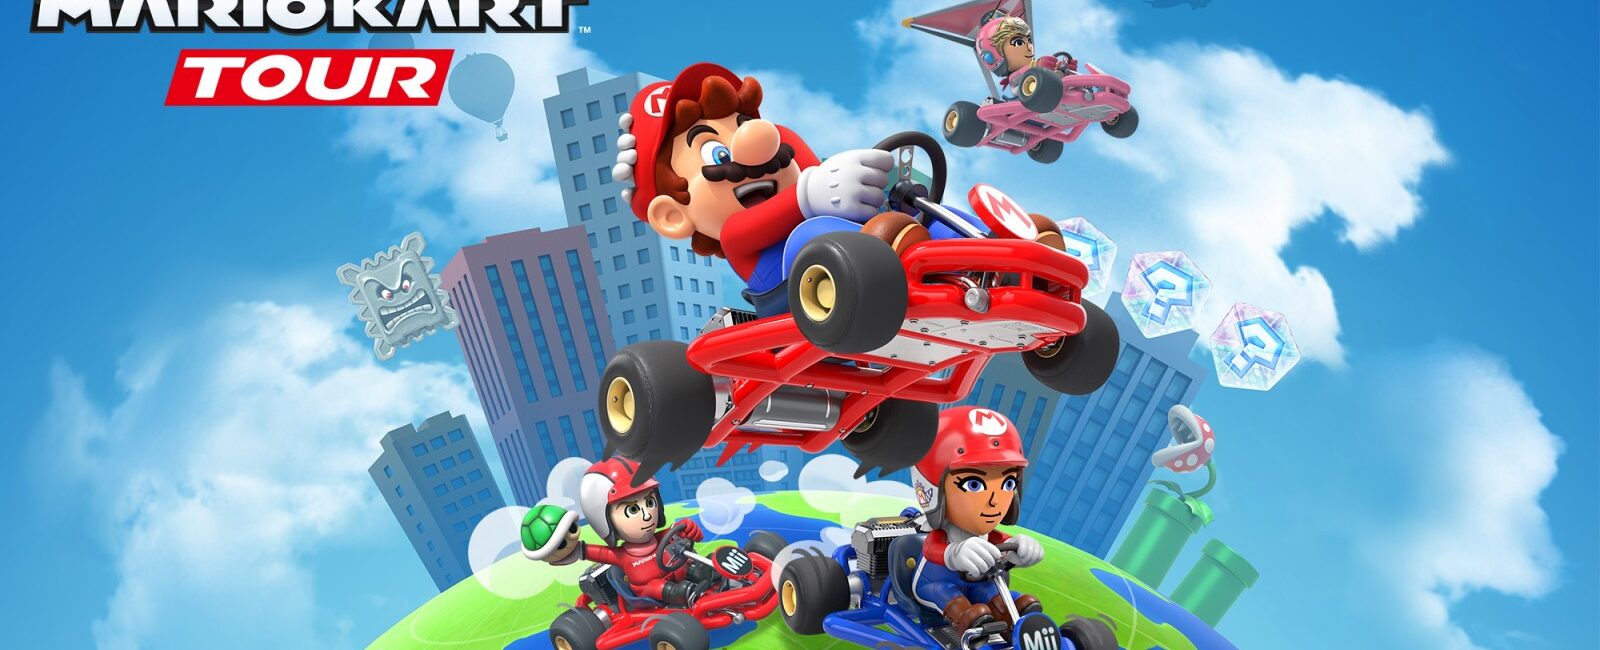 Hoofdafbeelding van Mario Kart Tour